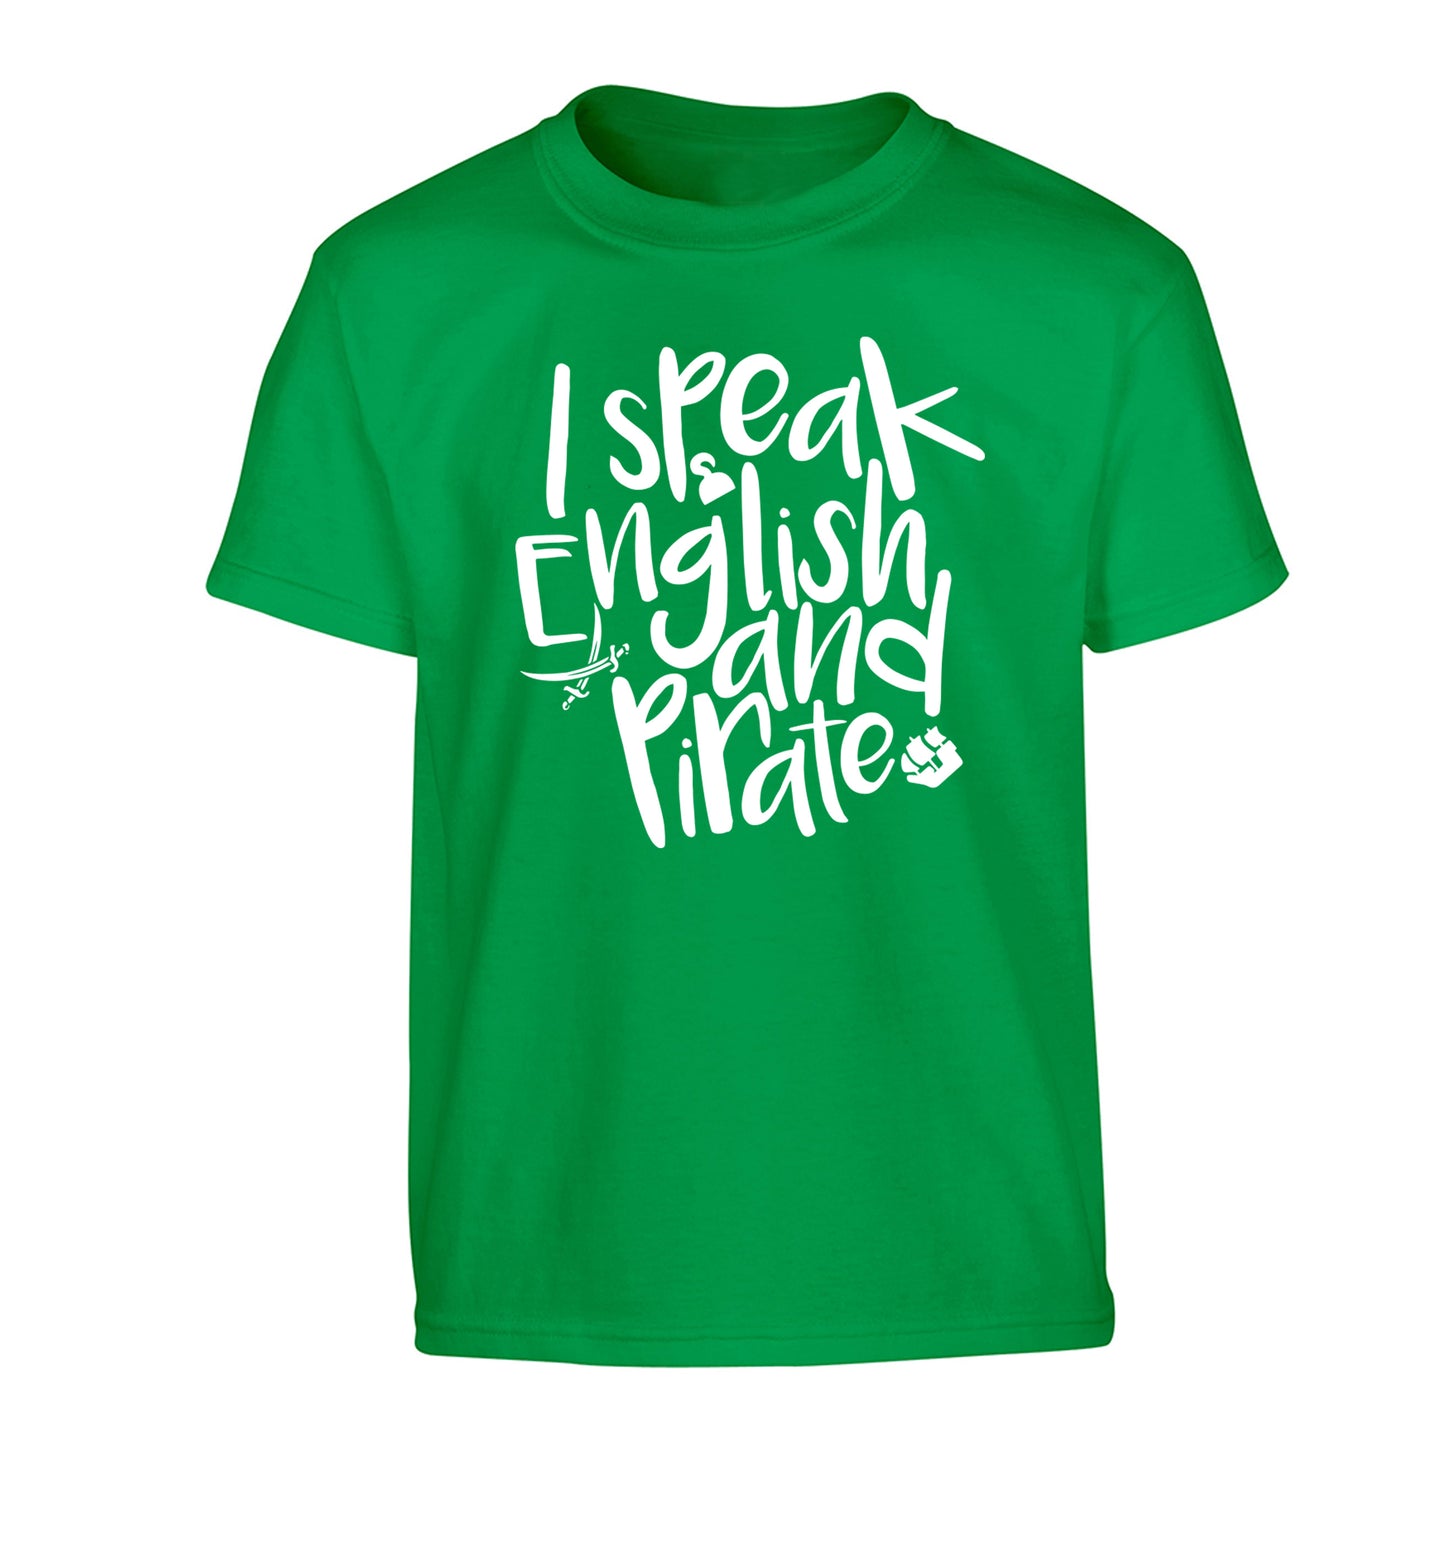 I speak English and pirate Children's green Tshirt 12-13 Years